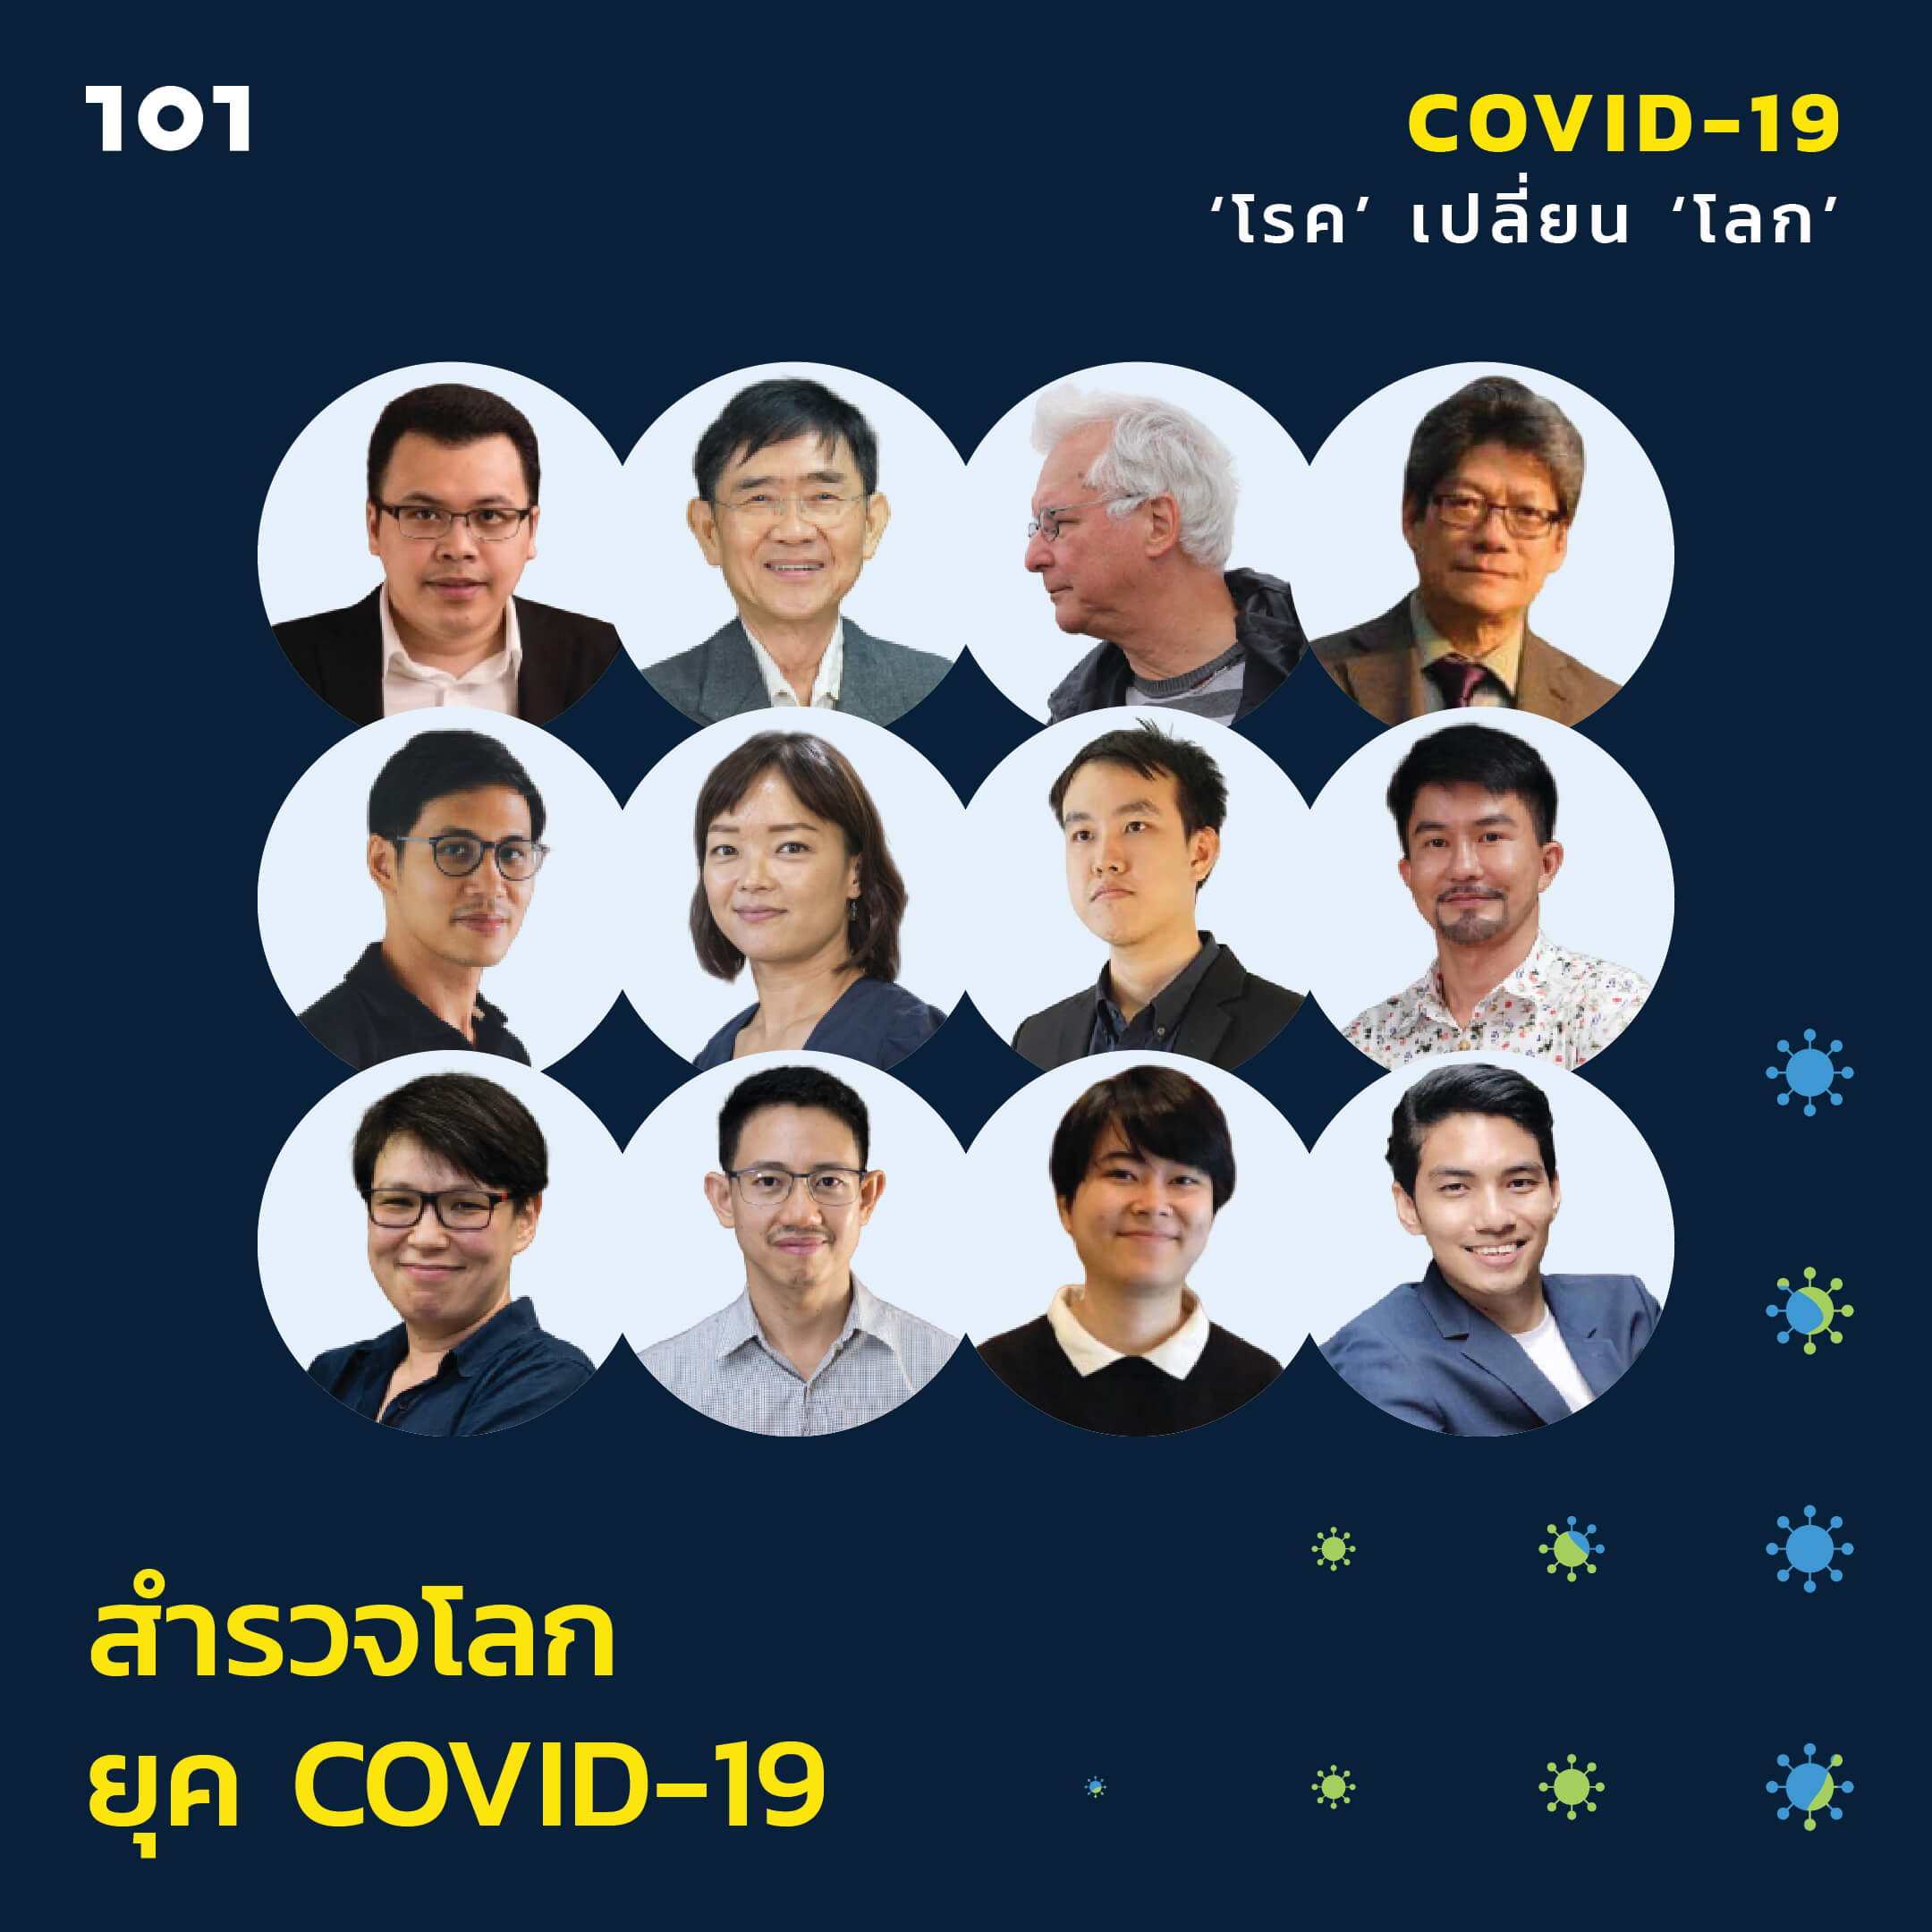 สำรวจโลกยุค COVID-19